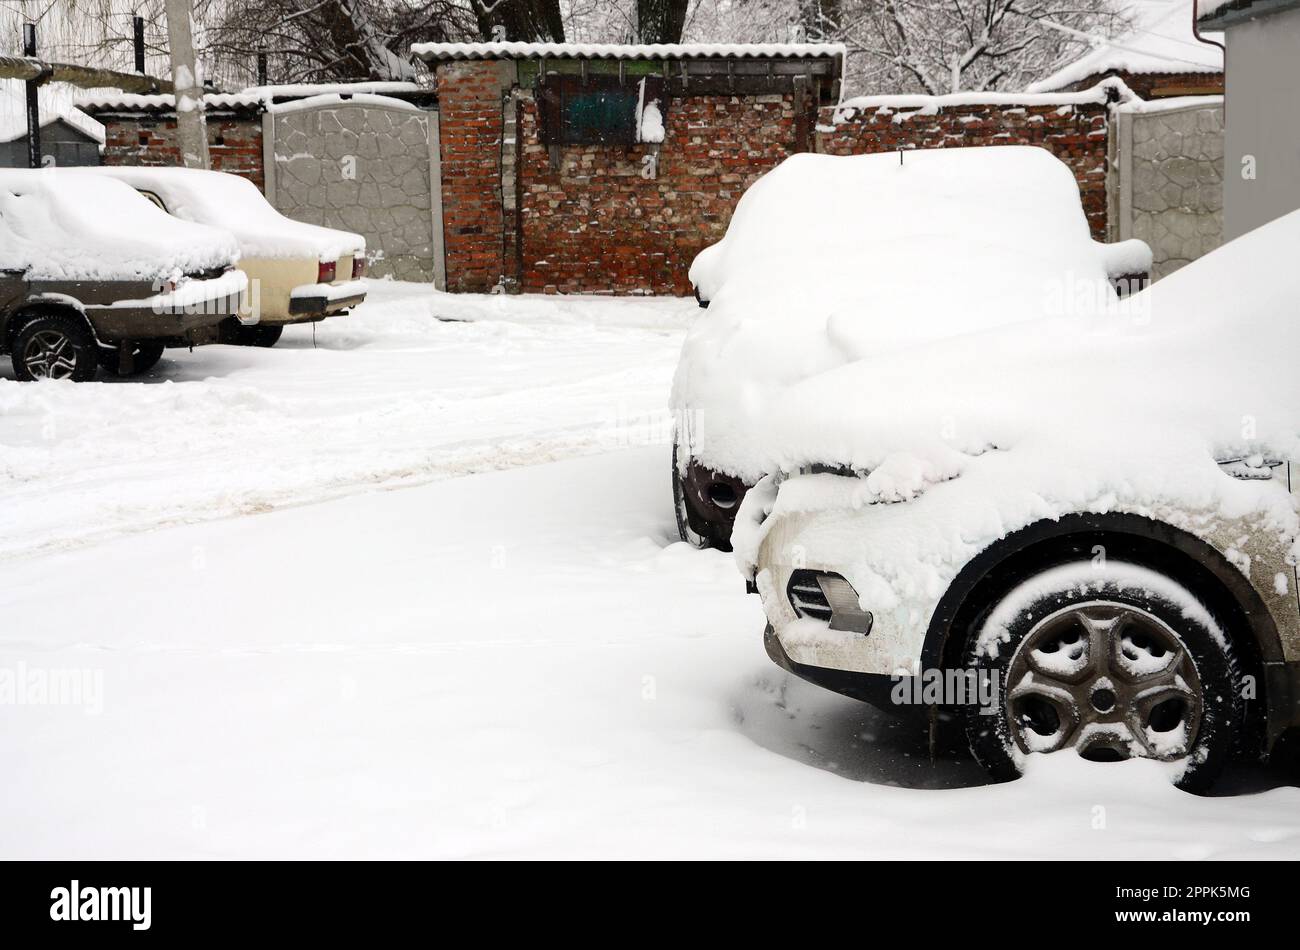 Fragment de la voiture sous une couche de neige après une forte chute de neige. La carrosserie de la voiture est recouverte de neige blanche Banque D'Images